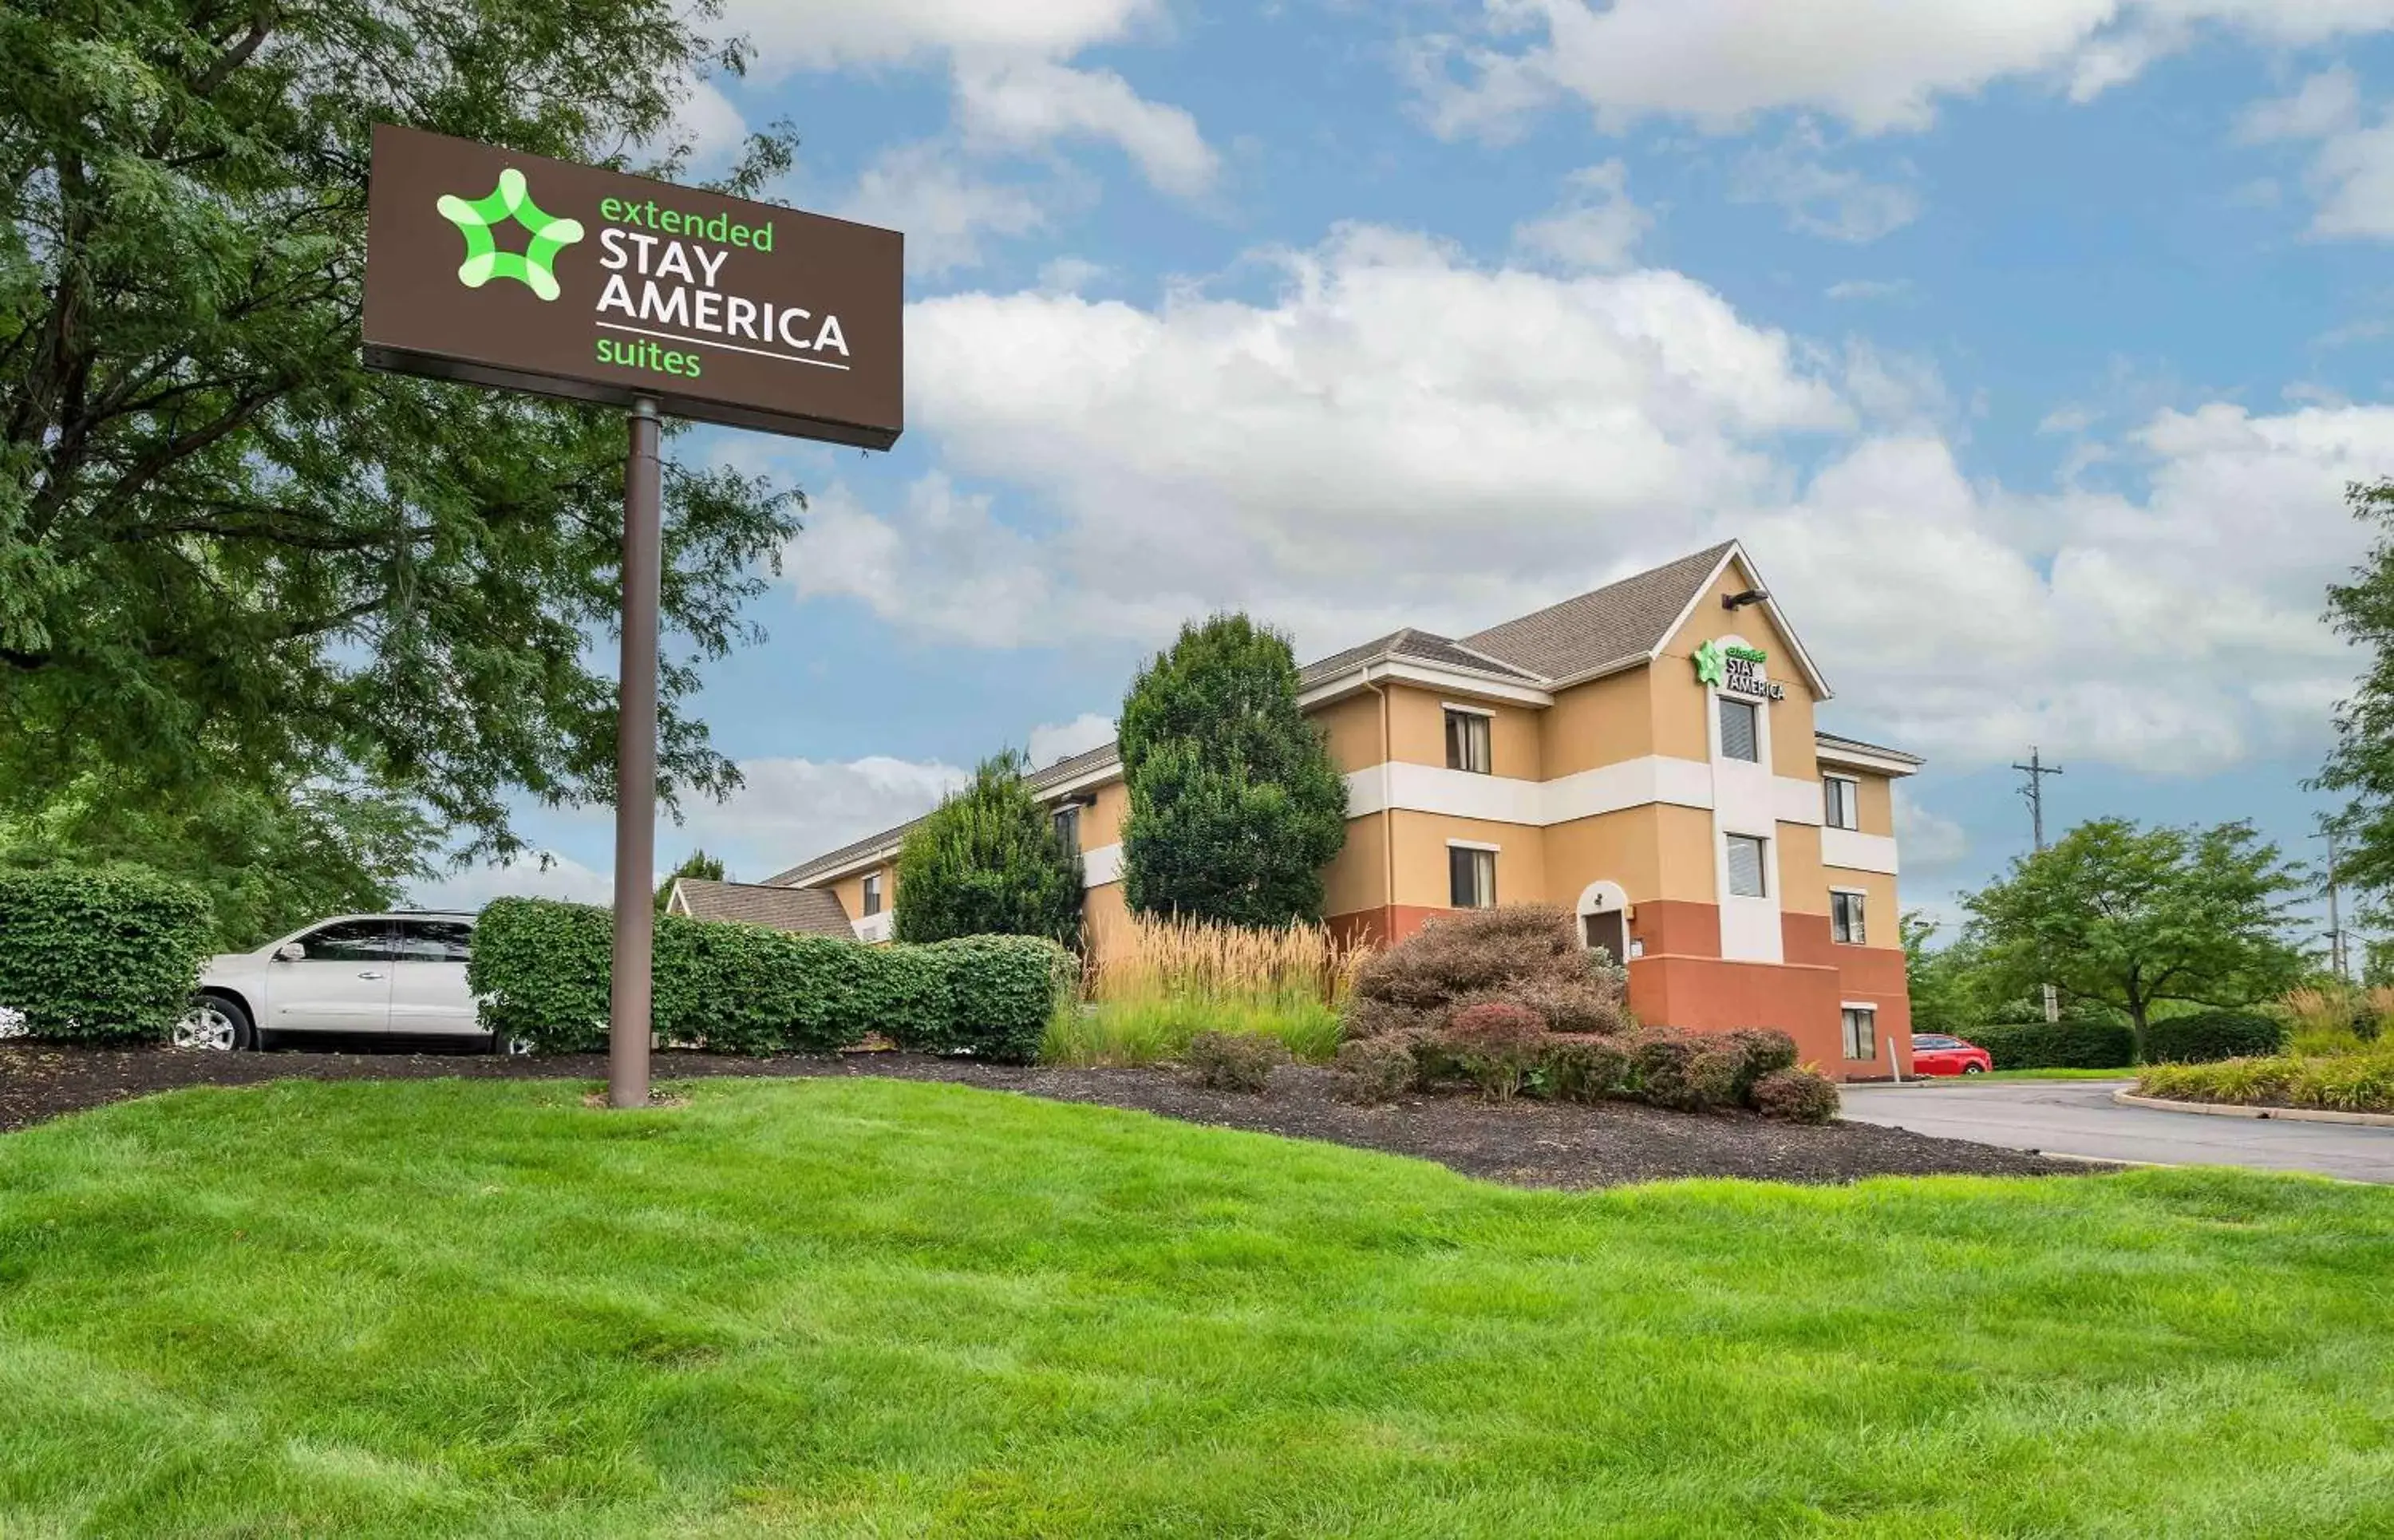 Property Building in Extended Stay America Suites - Cincinnati - Fairfield